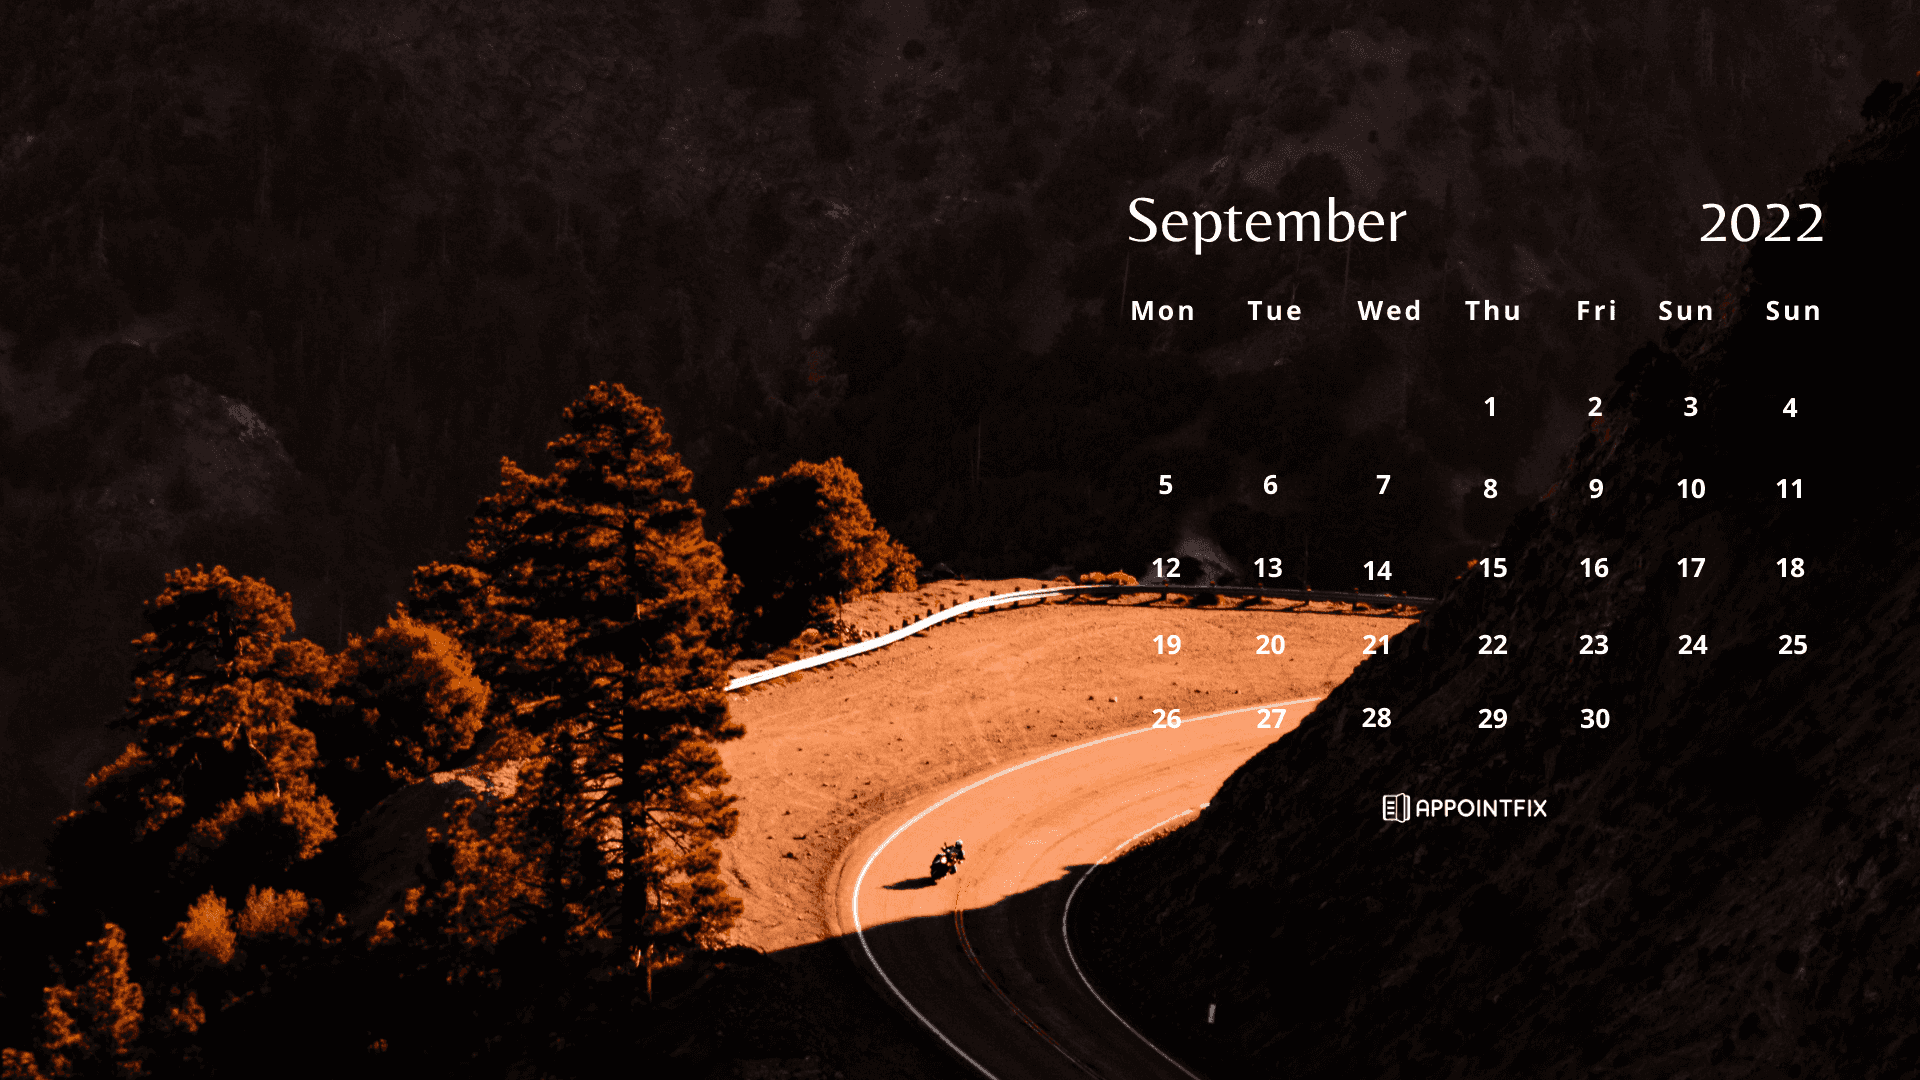 The joyous spirit of fall: September